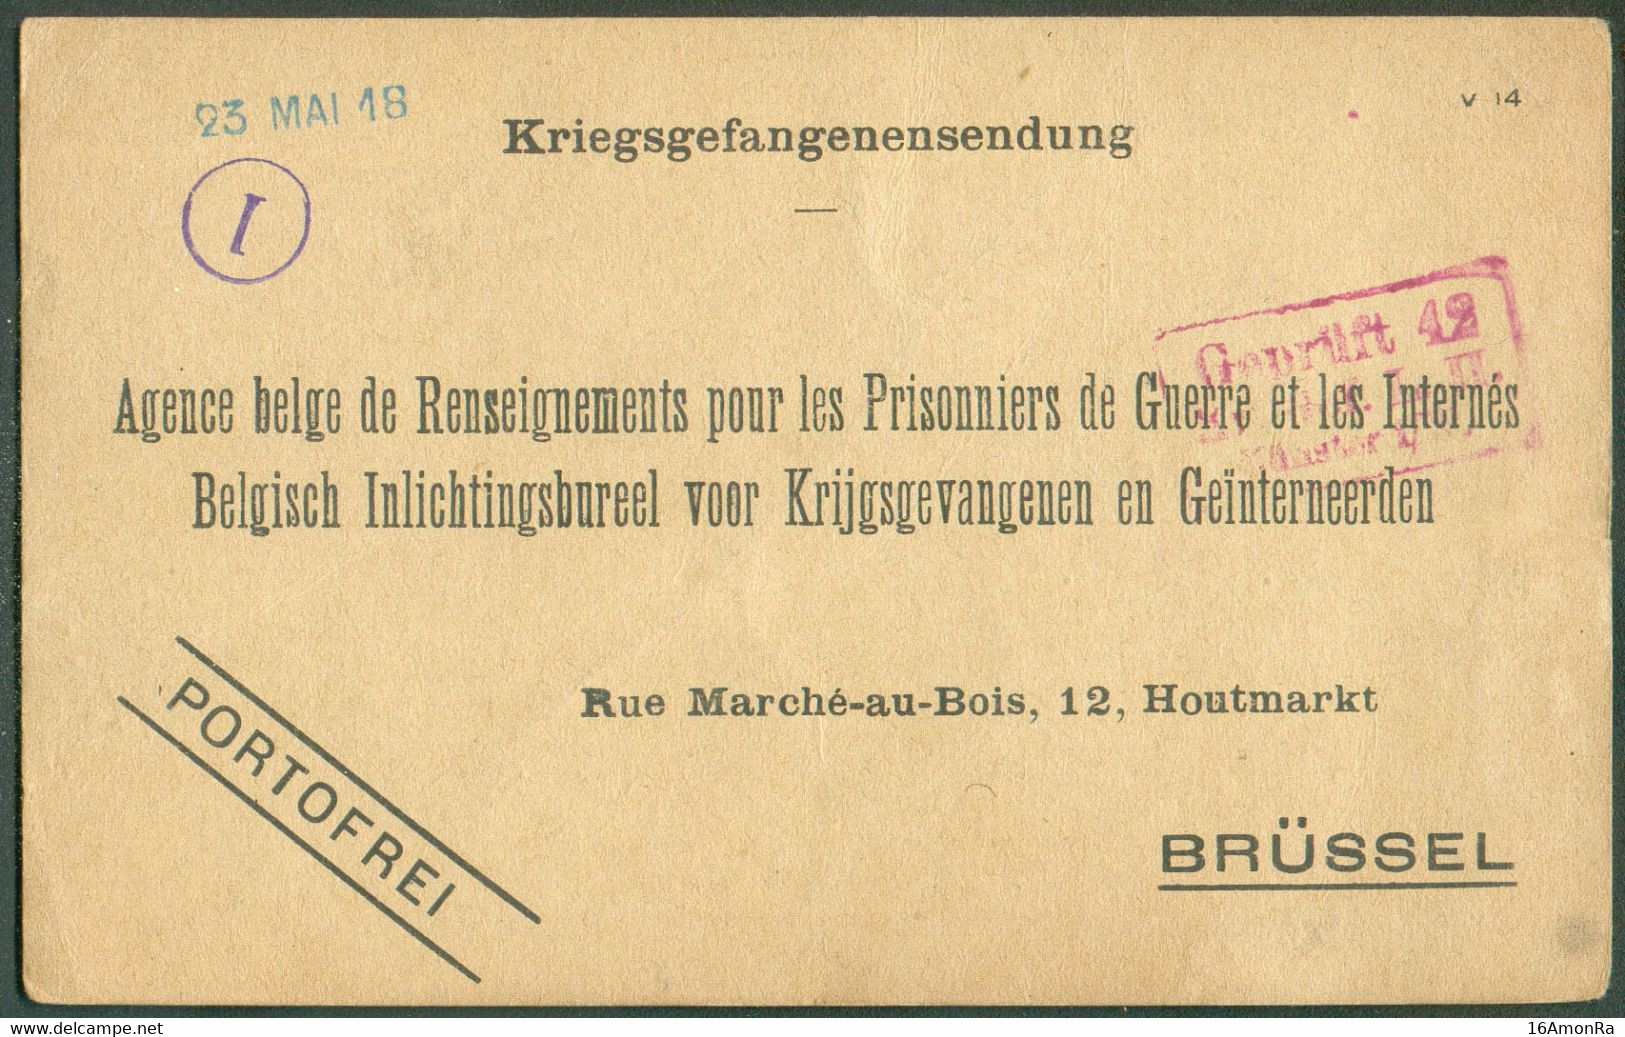 Kriegsgefangenensendung (Kaart) à L'Agence Belge De Renseignements Pour Les Prisonniers De Guette Et Les Internés à Brux - Krijgsgevangenen